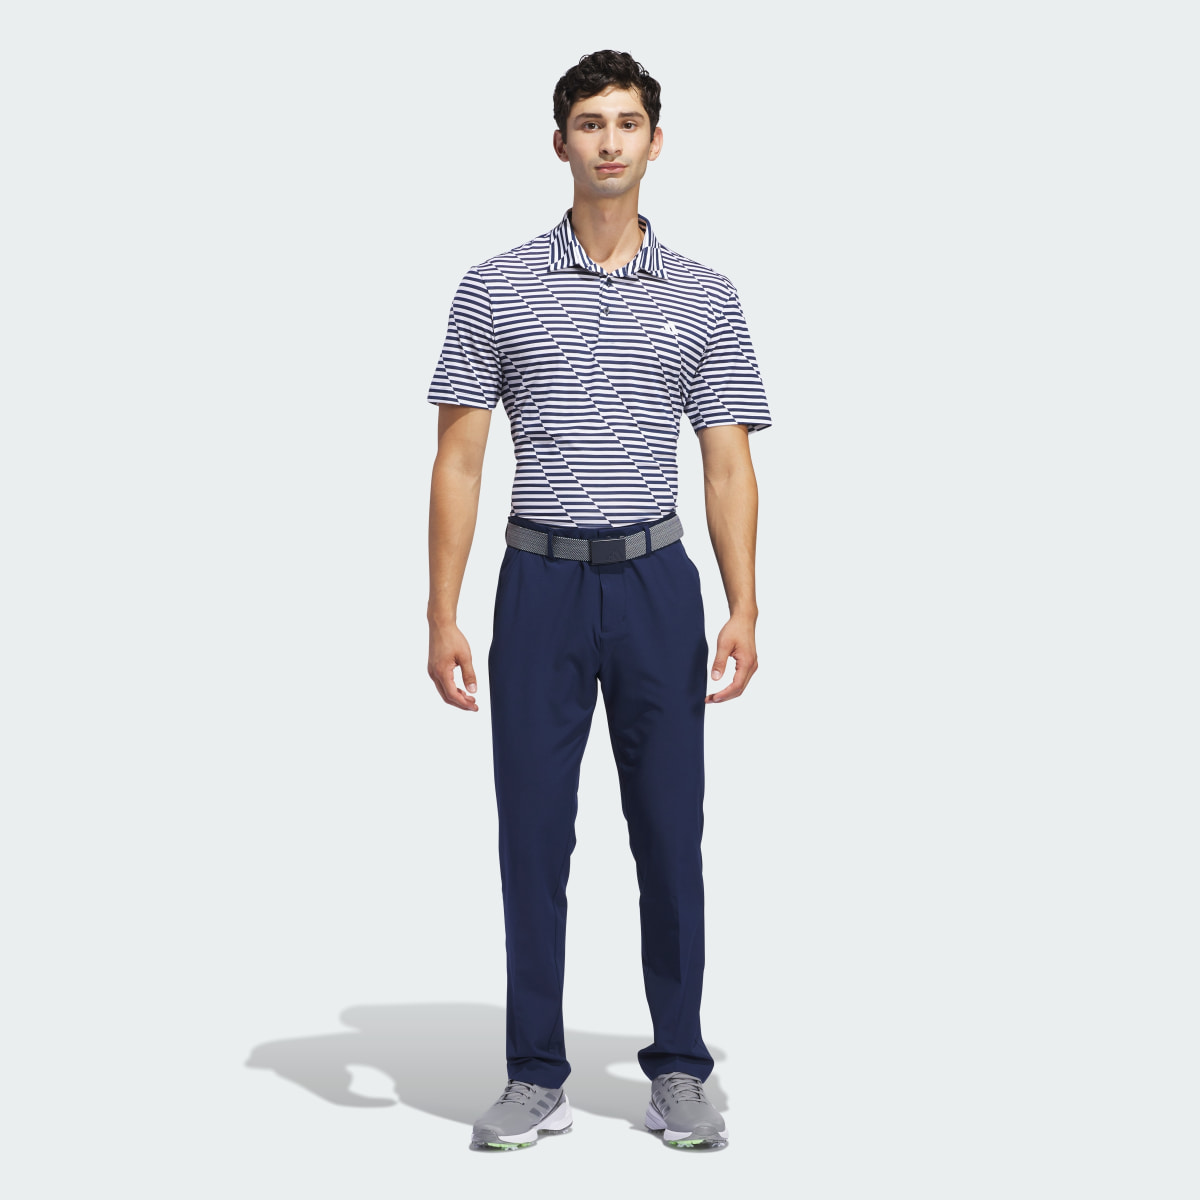 Adidas Pantalon de golf fuselé Ultimate365. 5